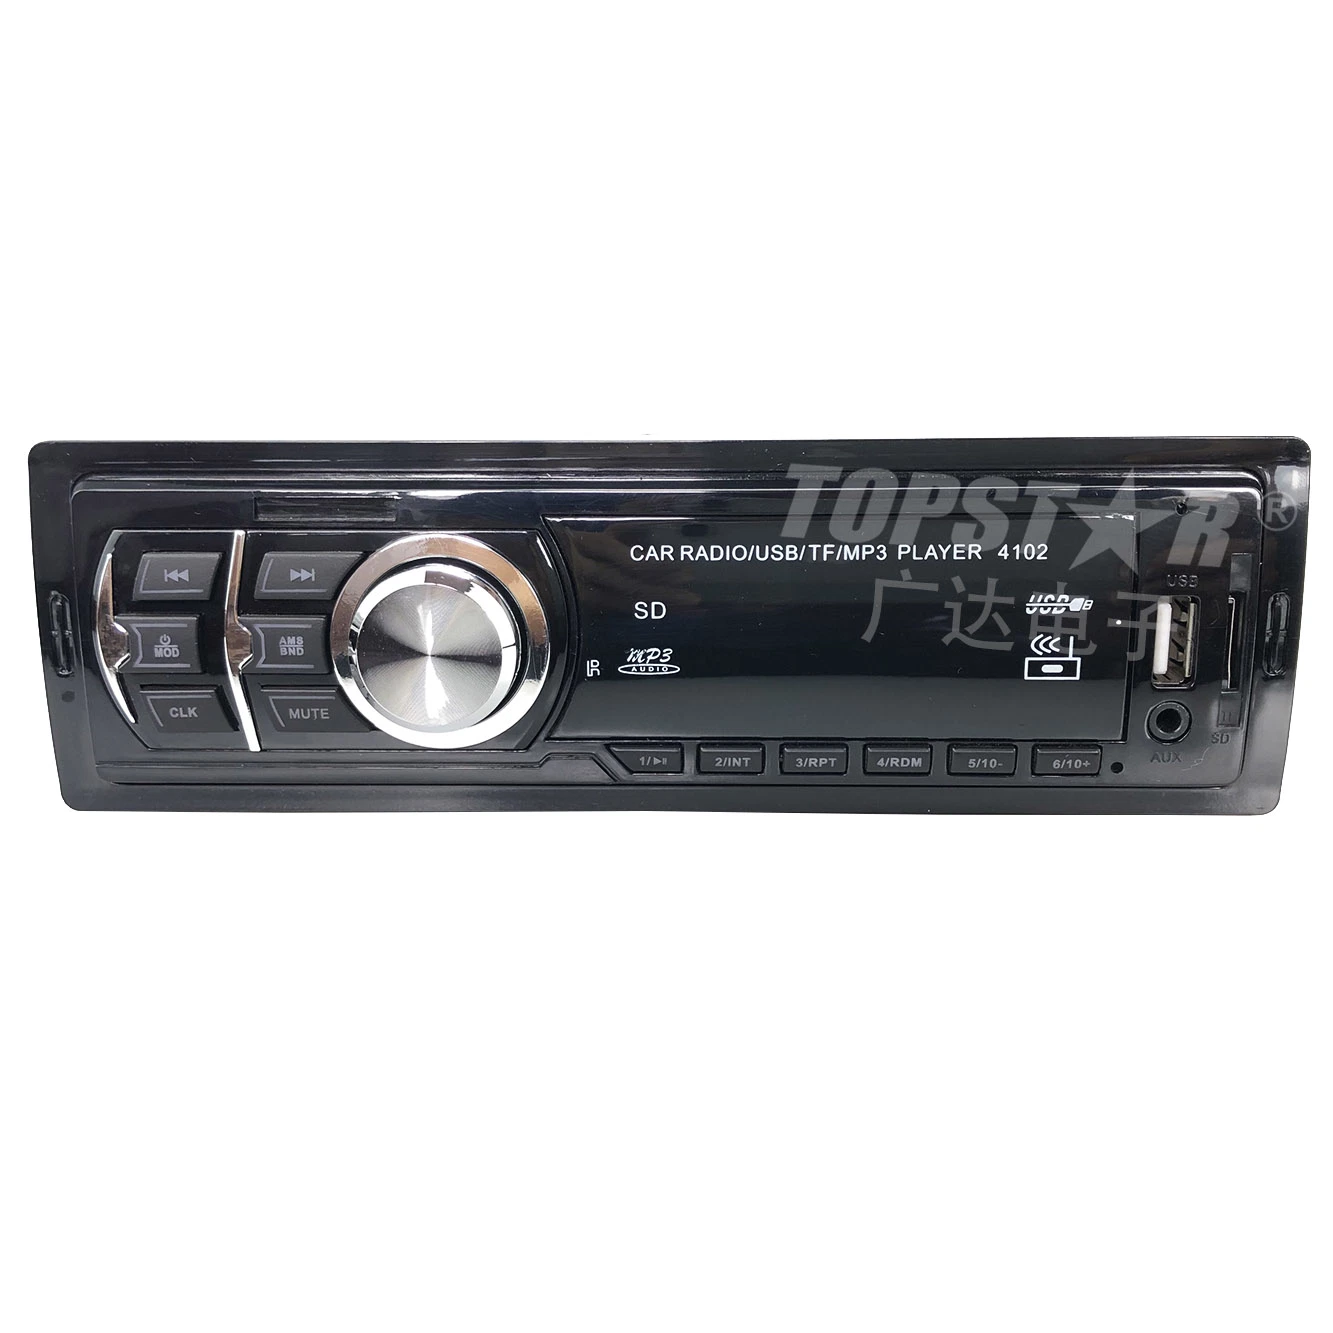 MP3-плеер на автомобиле MP3 для автомобильной стереосистемы видео Стационарный автомобильный цифровой аудиоприемник MP3 с неподвижным дисплеем